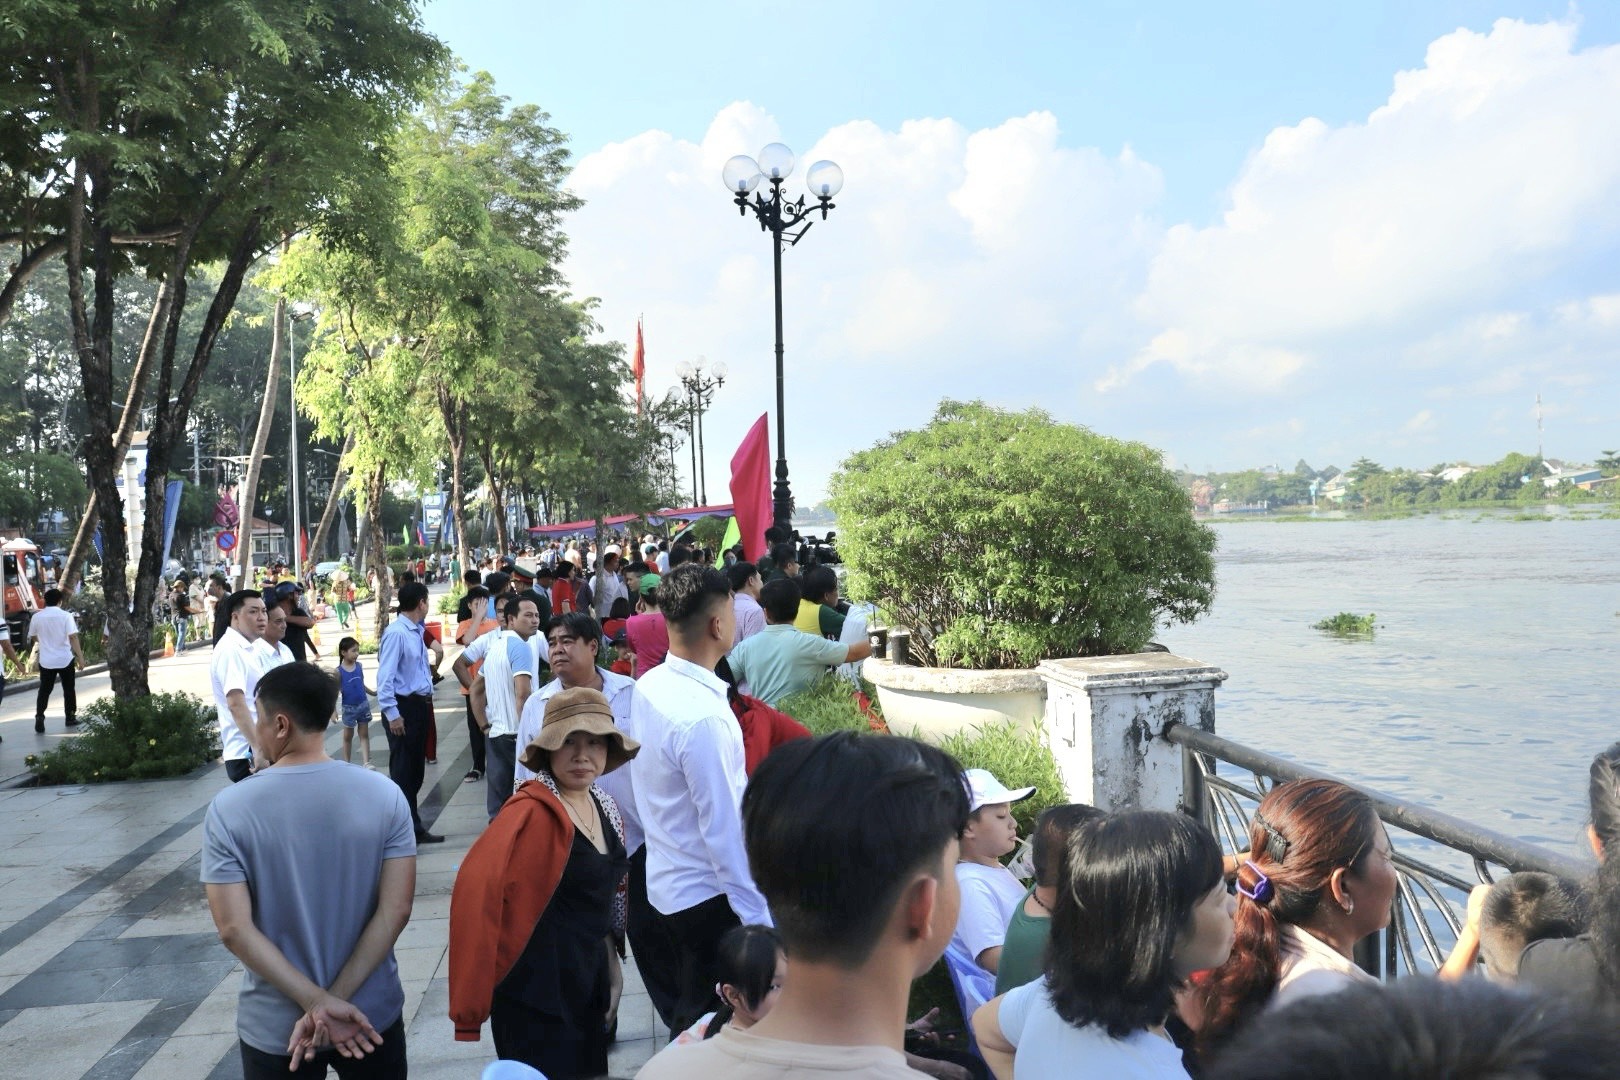 Sự kiện thu hút sự quan tâm theo dõi của đông đảo nhân dân trên địa bàn TP Thủ Dầu Một và khu vực lân cận.